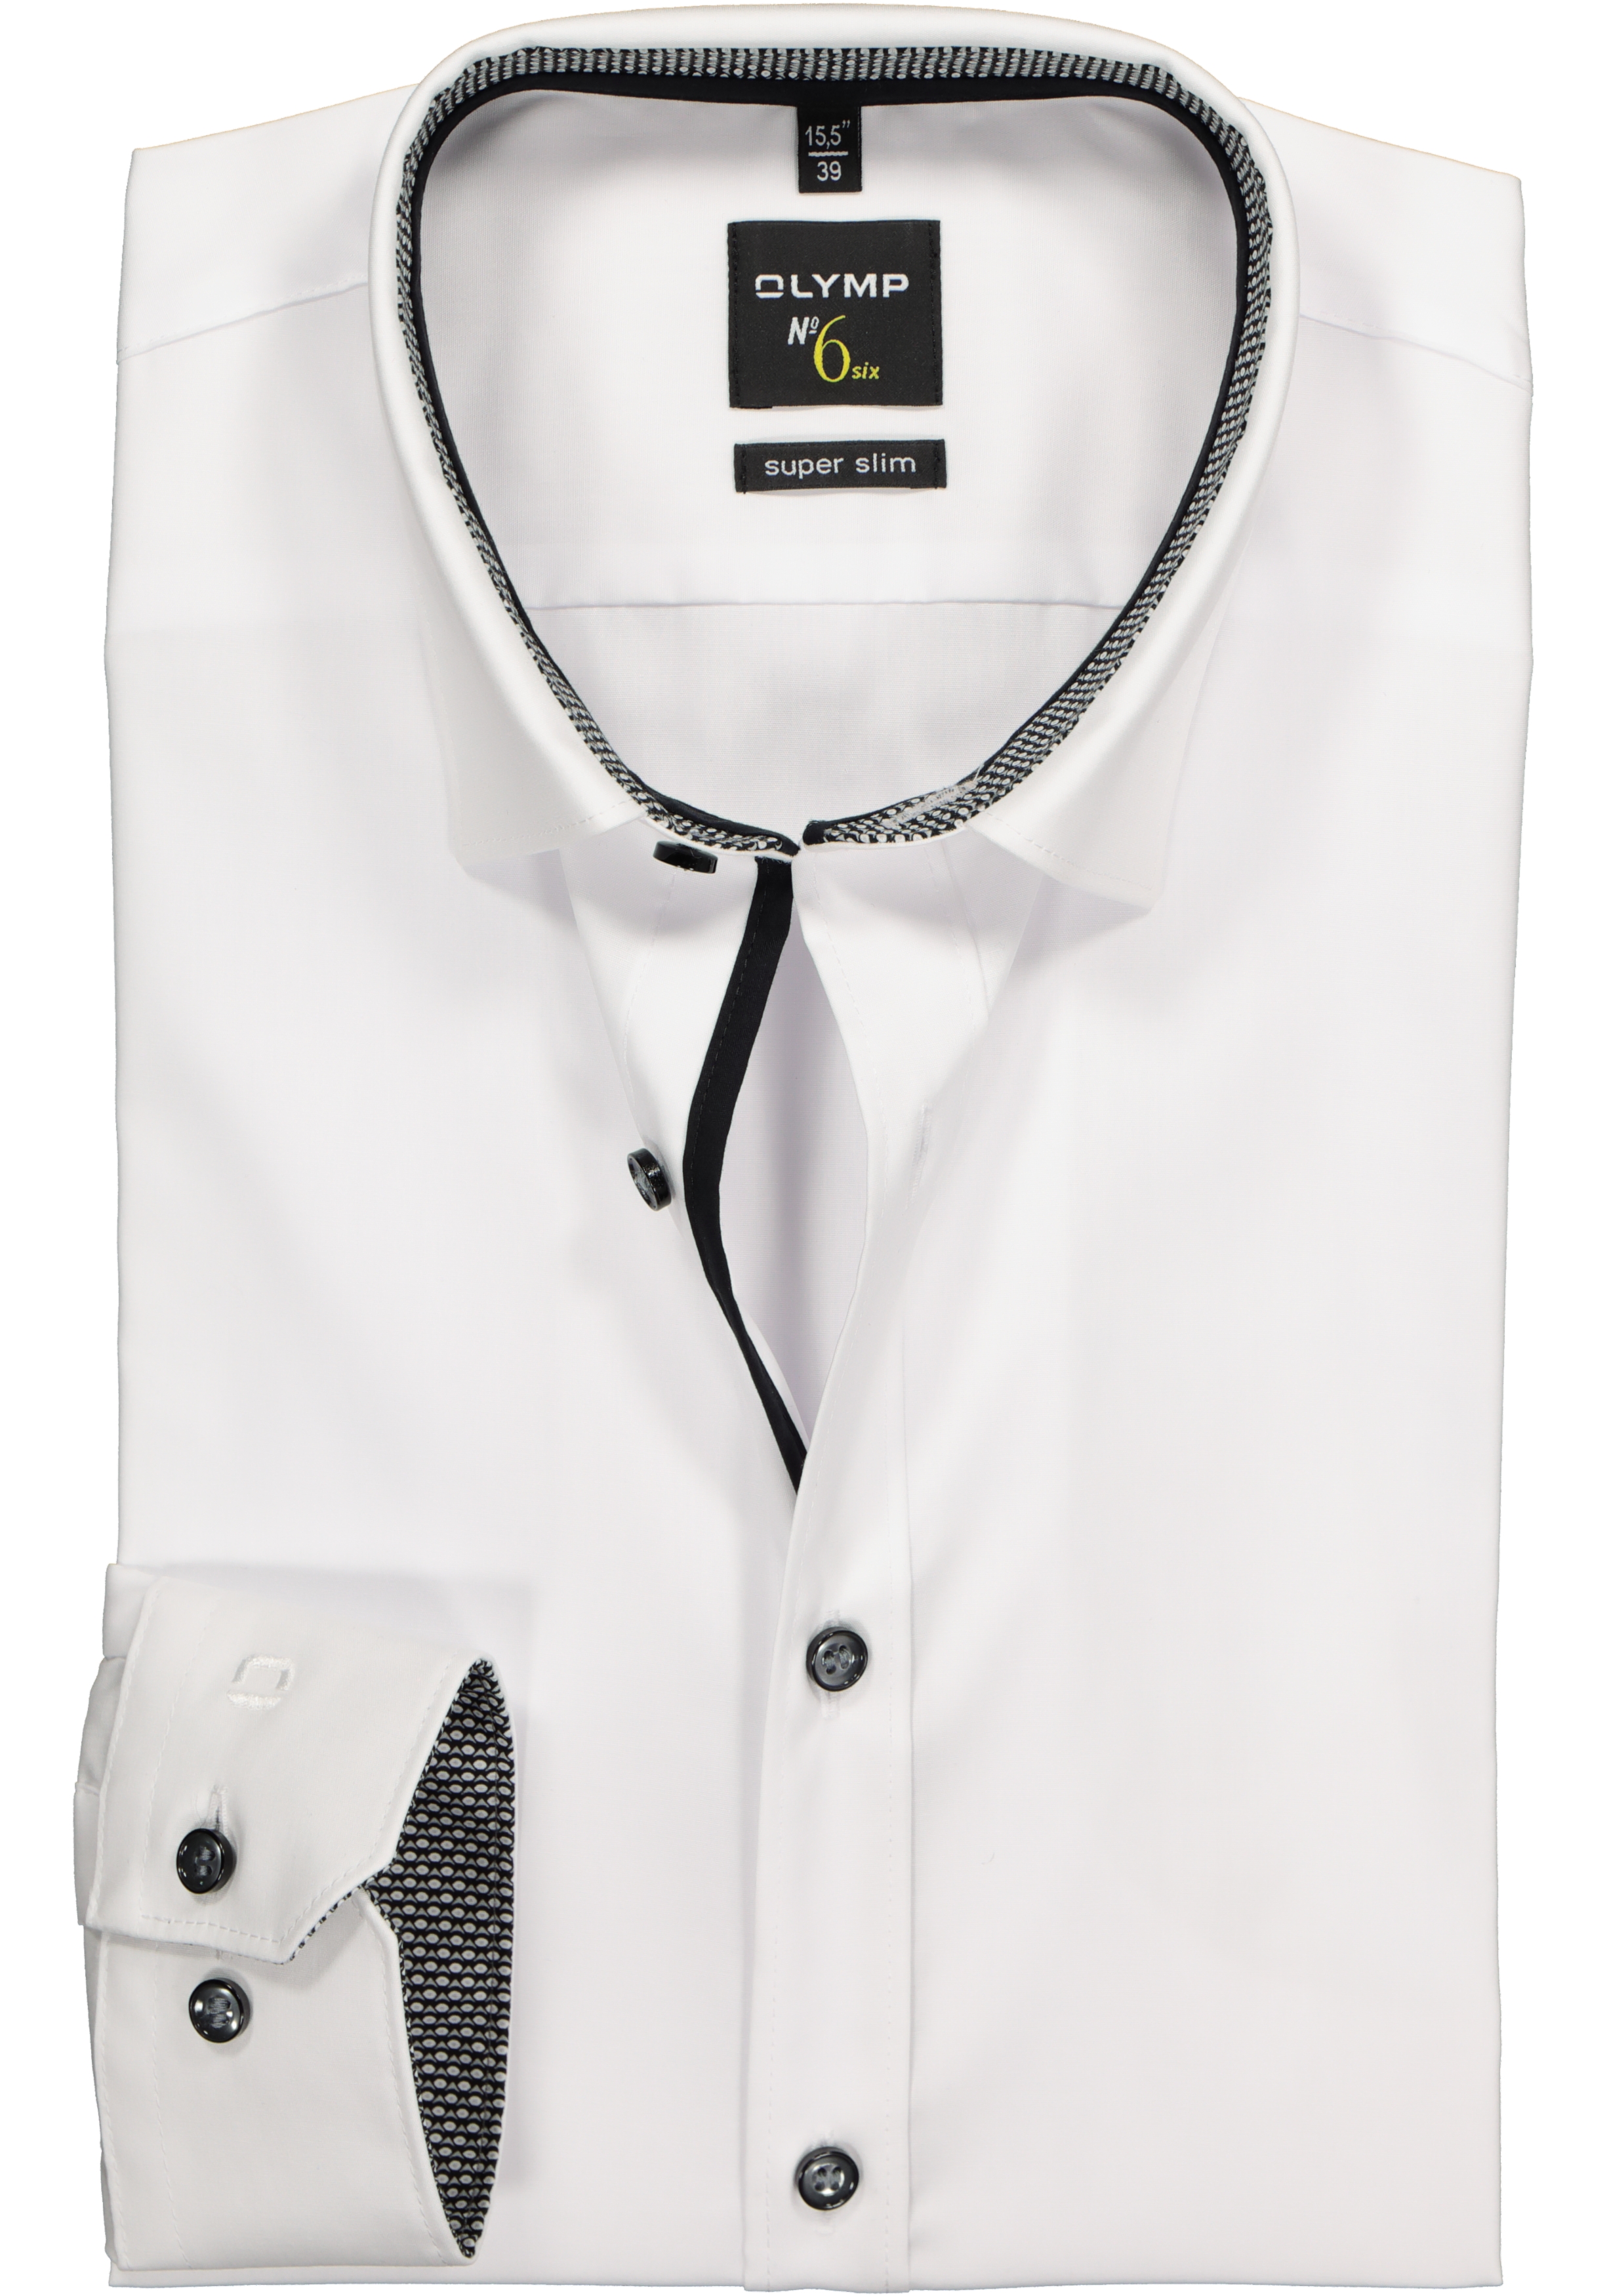 Vegen regiment Ontembare OLYMP No. Six super slim fit overhemd, wit (zwart contrast) - Shop de  nieuwste voorjaarsmode